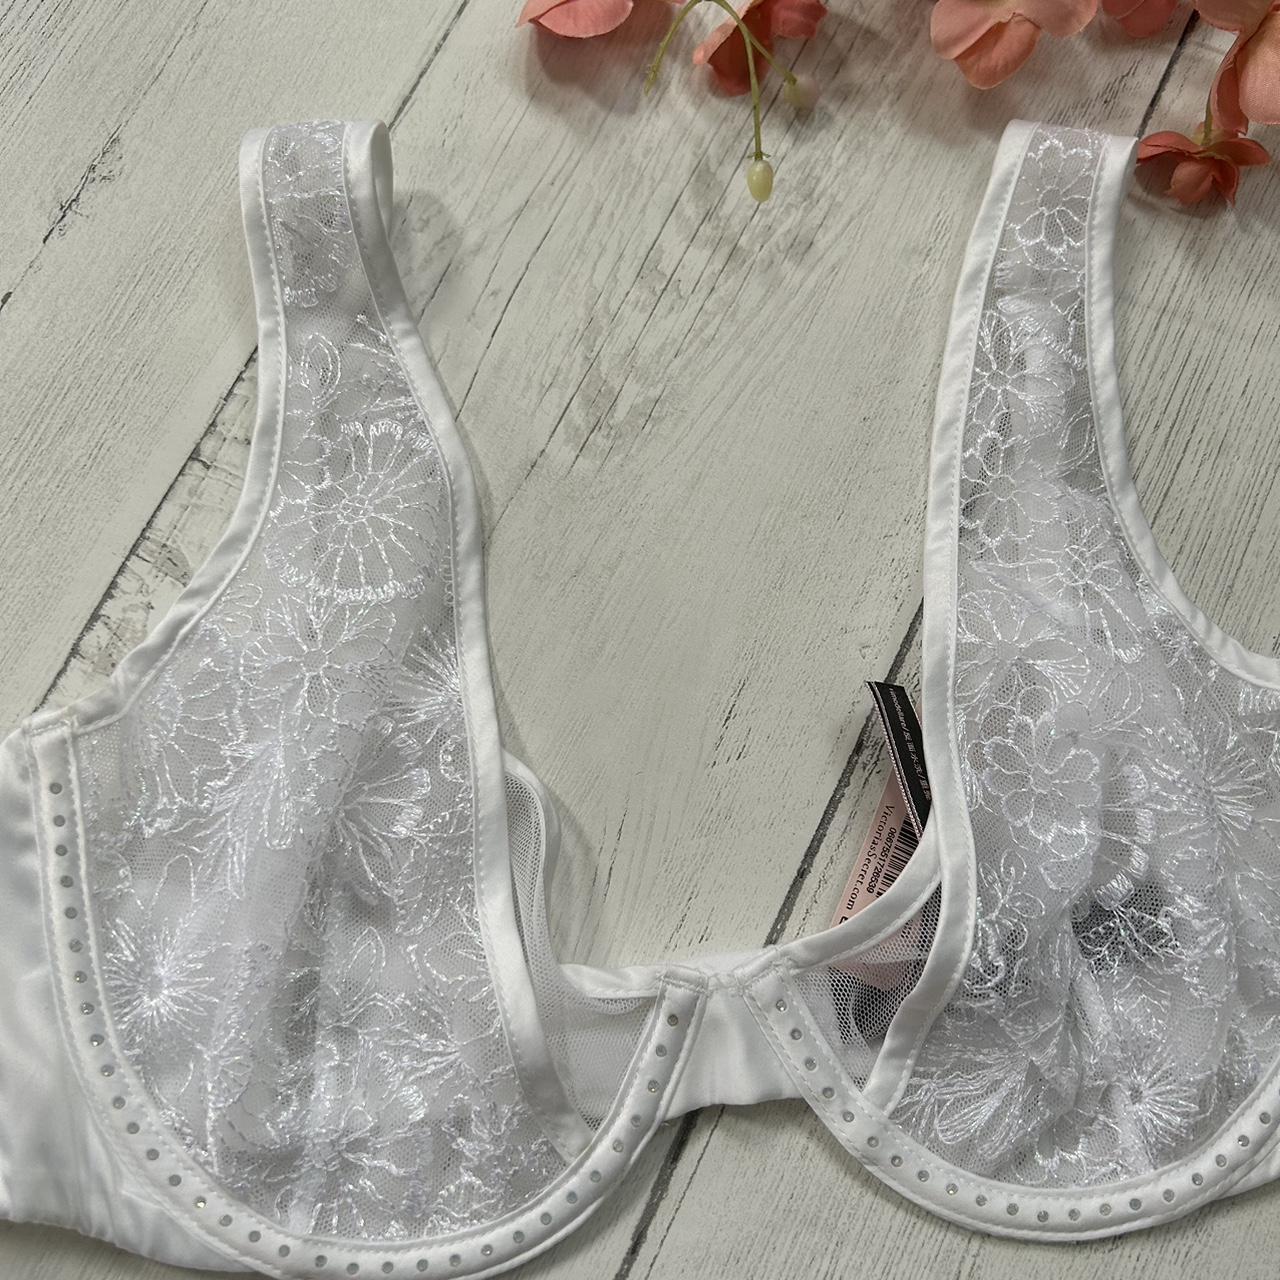 Victoria's Secret floral unlined plunge bra - Depop